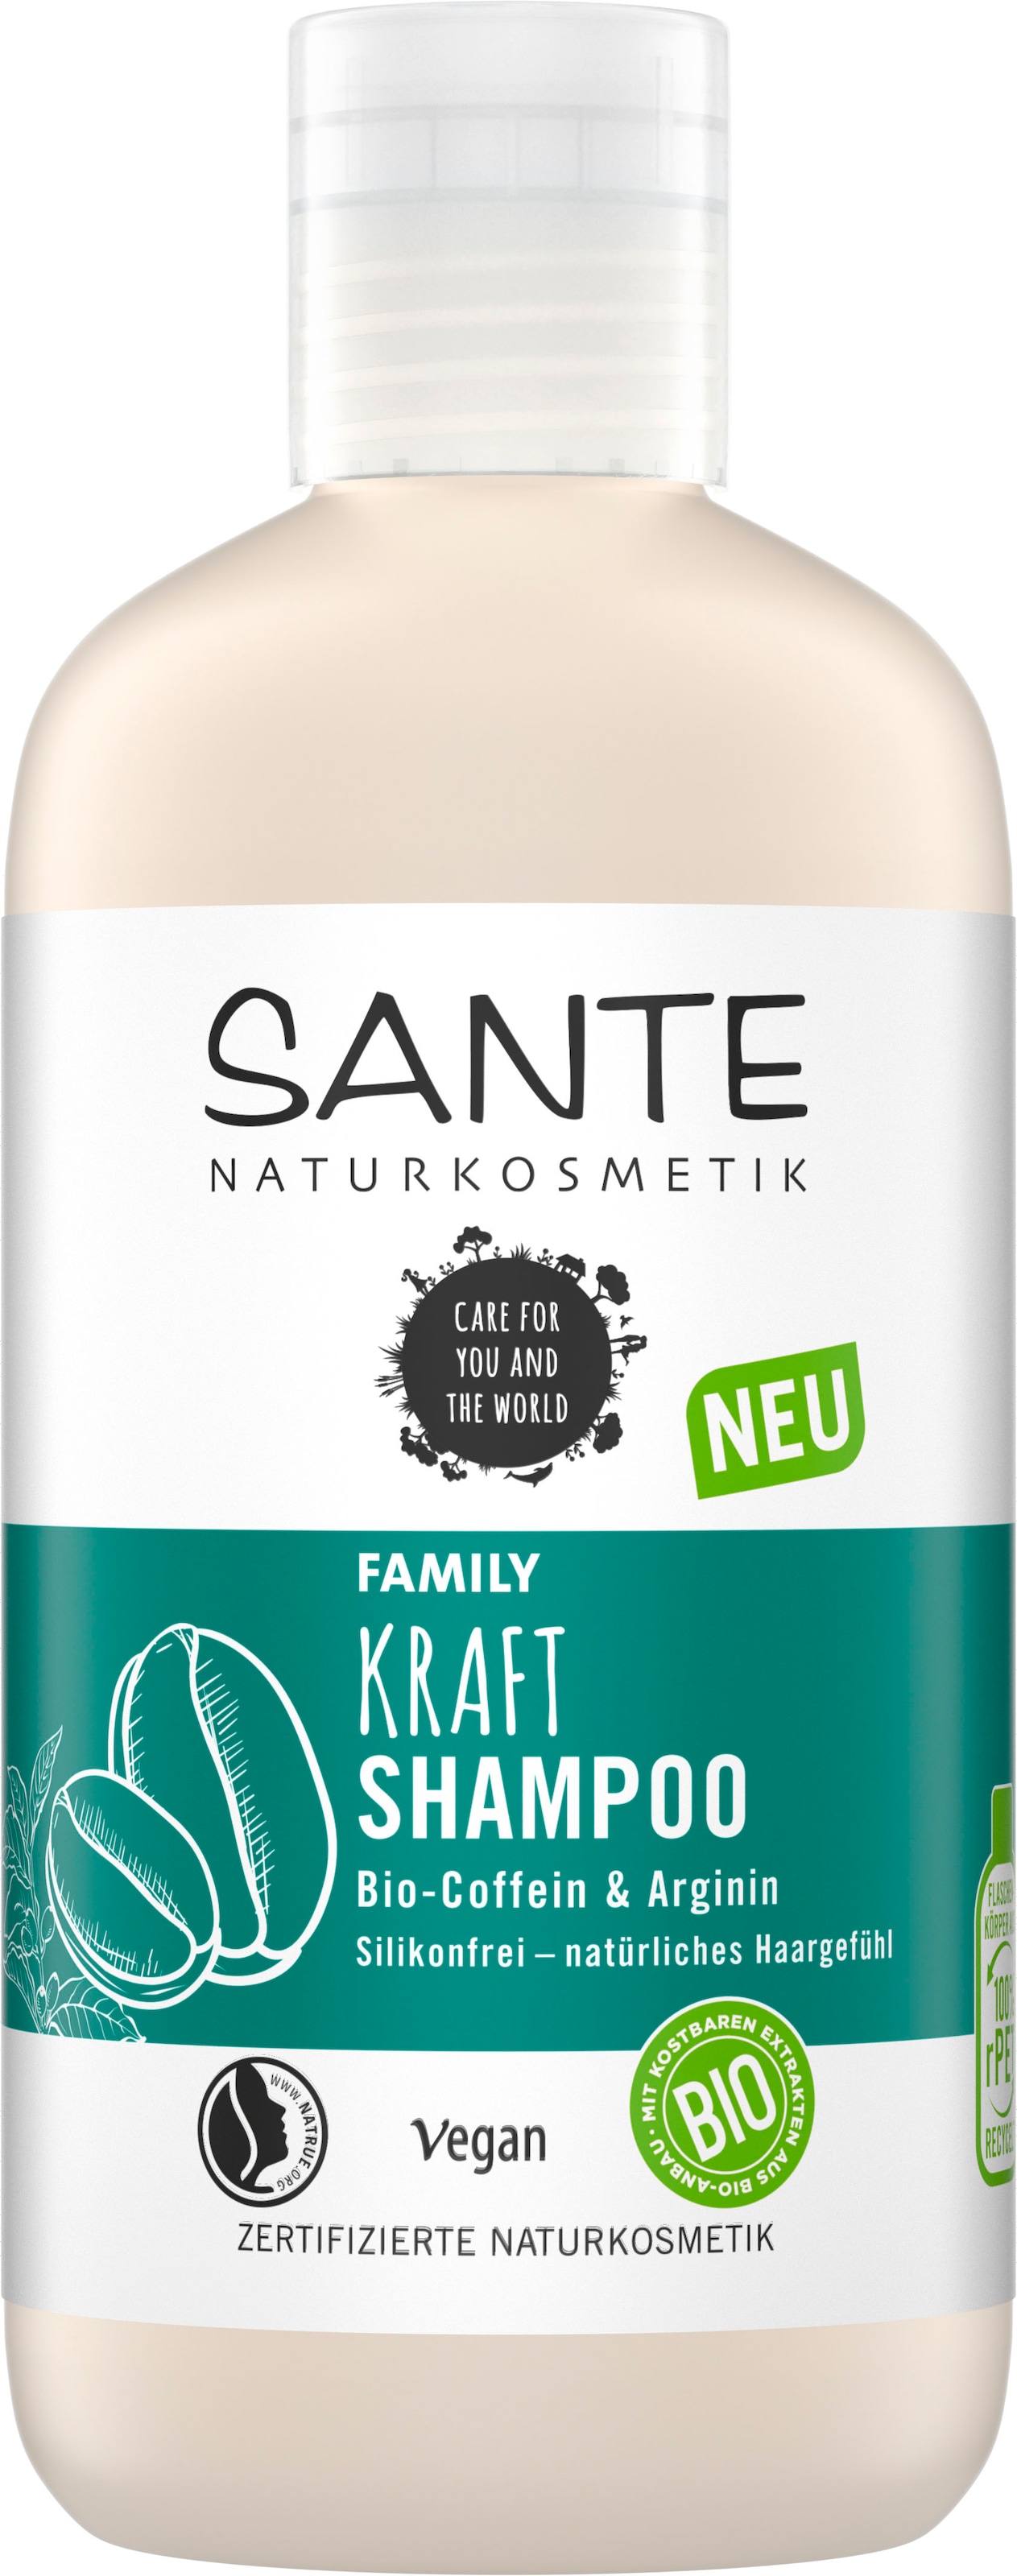 SANTE Haarshampoo »Kraft Shampoo«